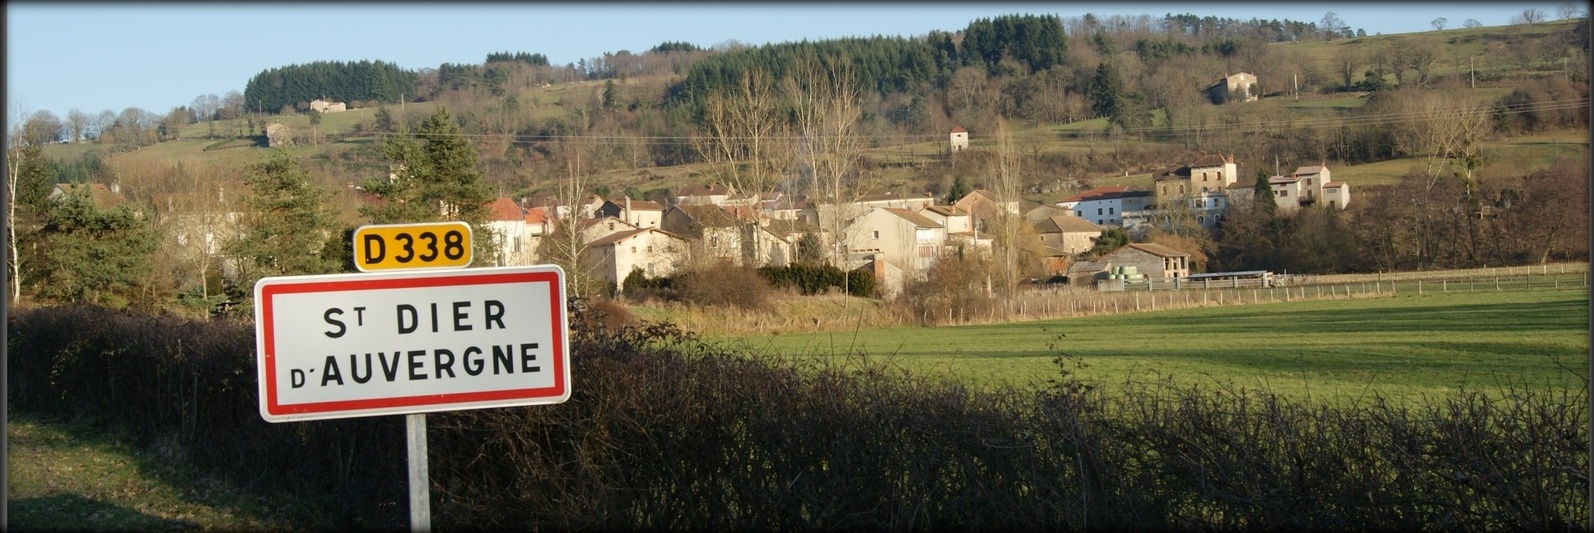 Saint-Dier-d'Auvergne